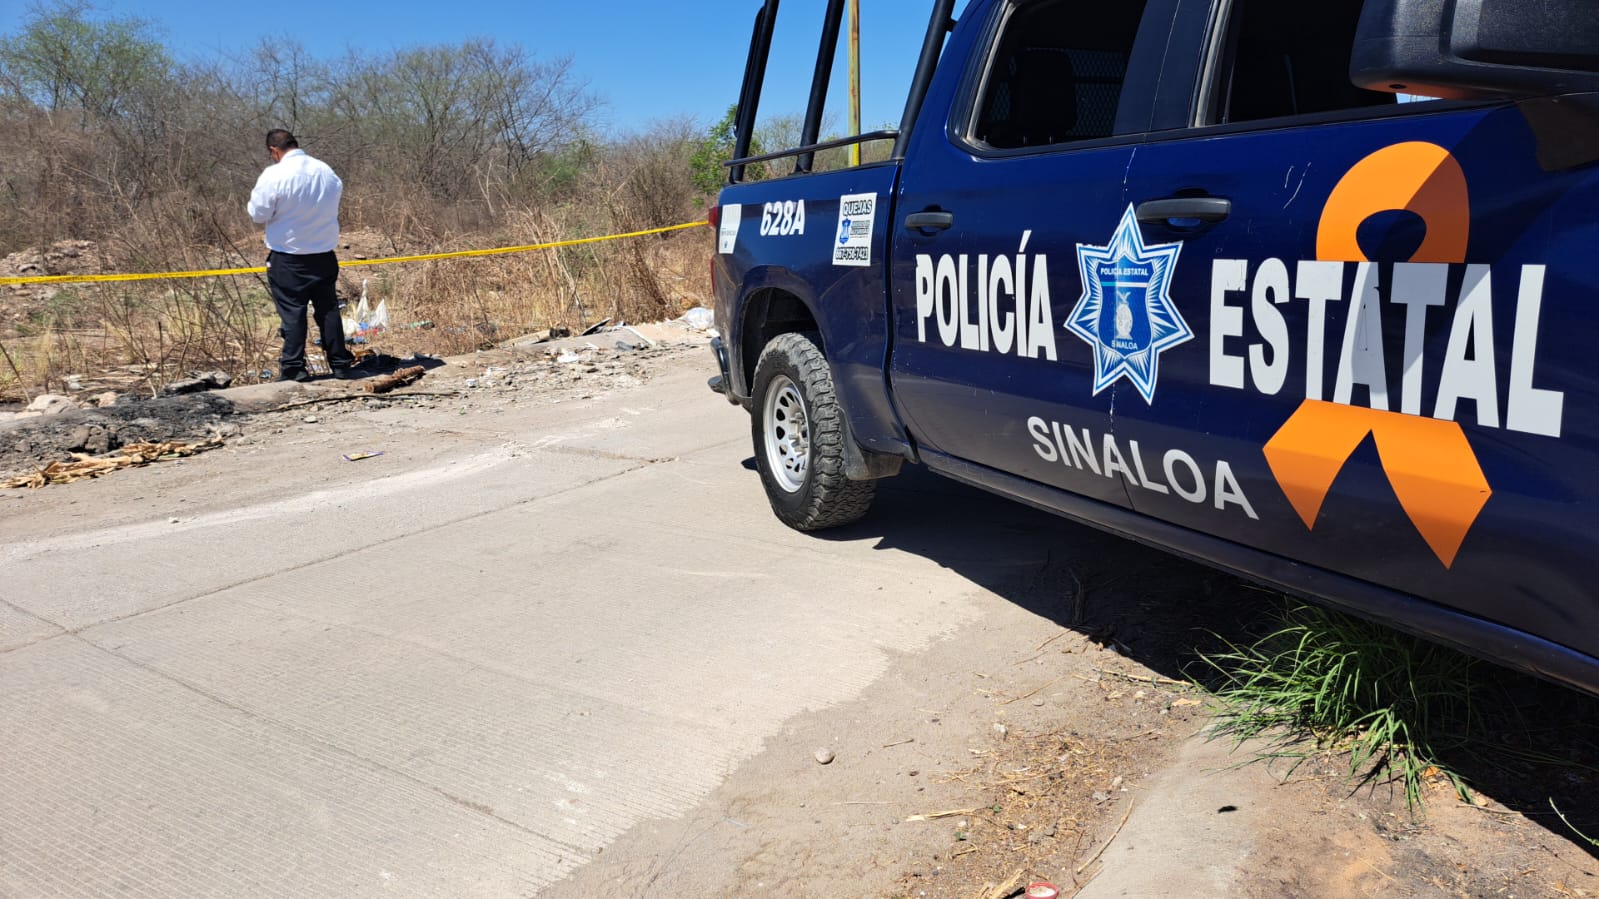 Policía Estatal Culiacán Sinaloa